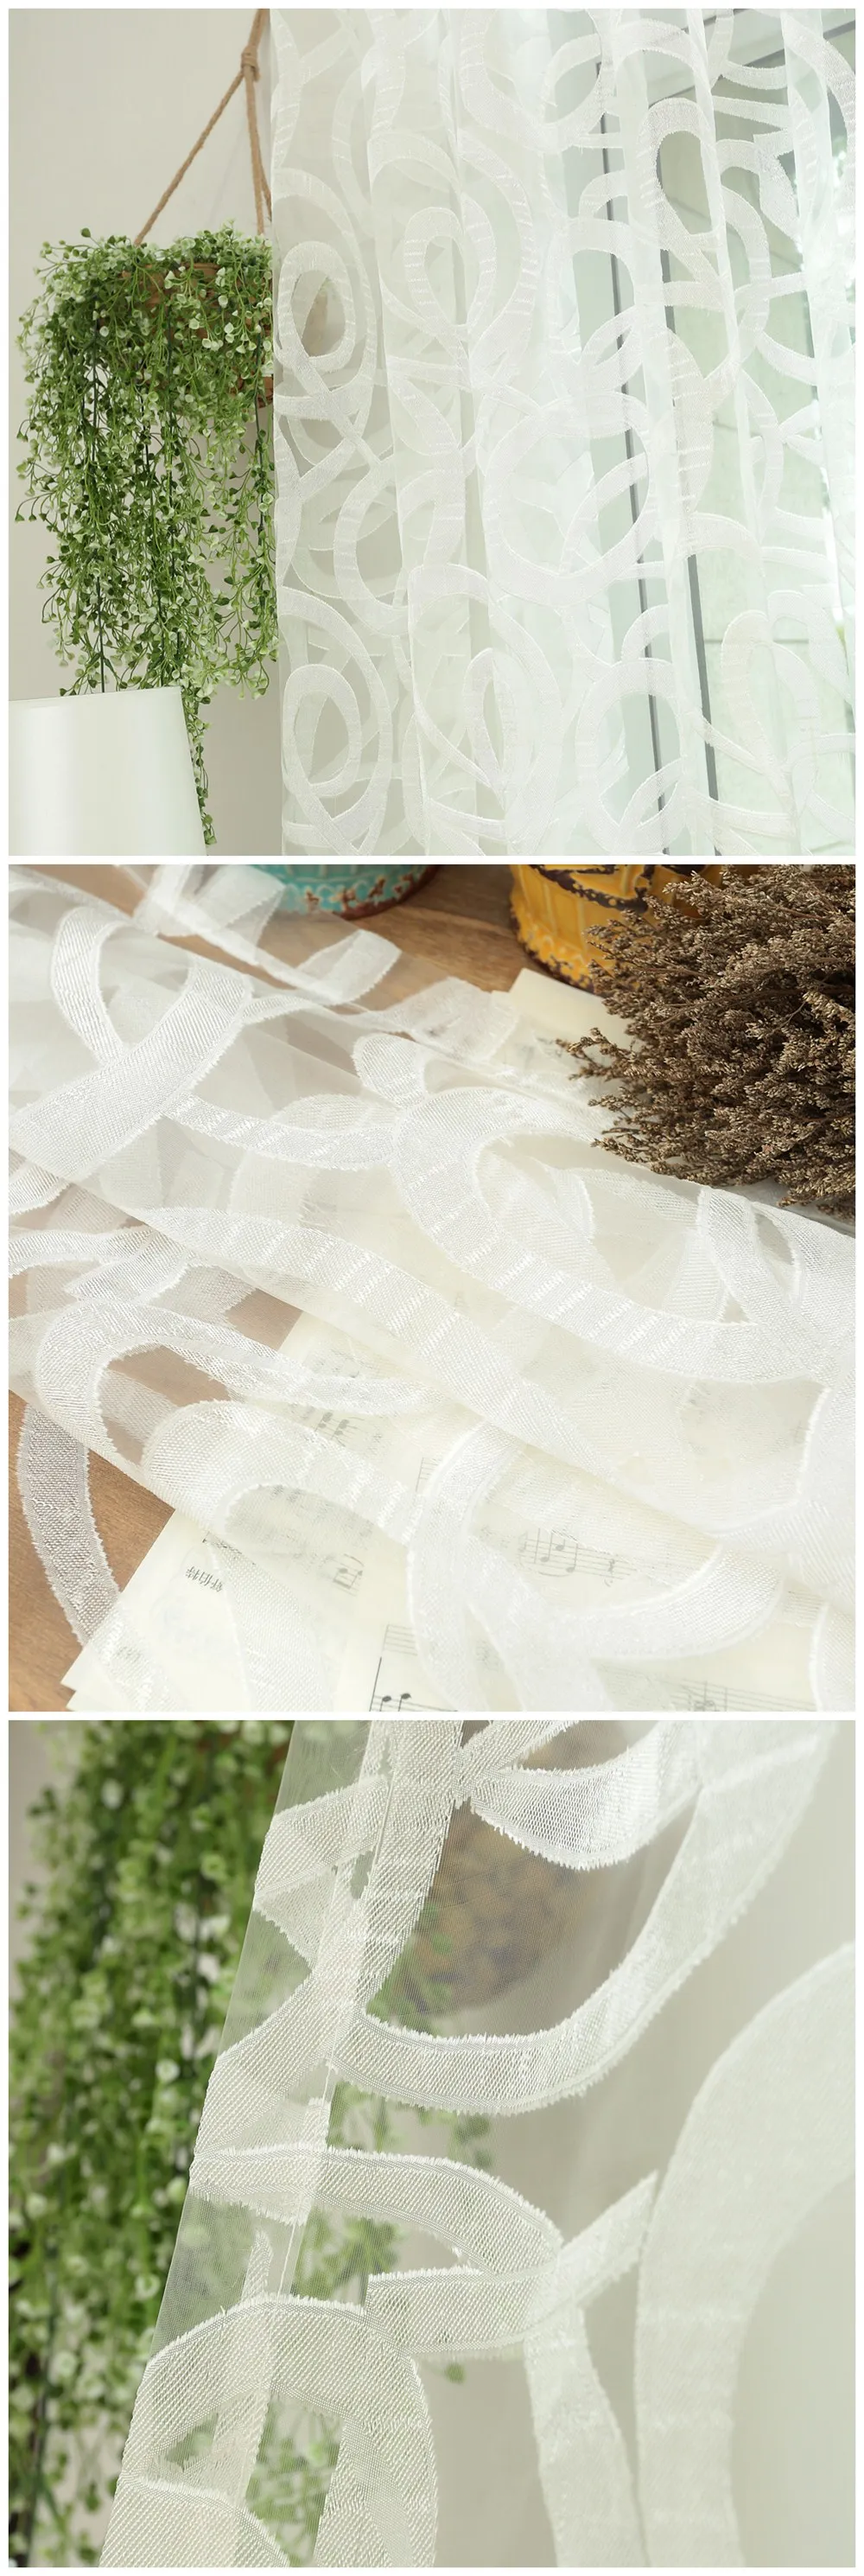 LOZUJOJU прозрачный тюль капли Белый Шторы в полоску жаккард цветочный дизайн пастырской тянуть плиссированные ленты ткань спальня окна